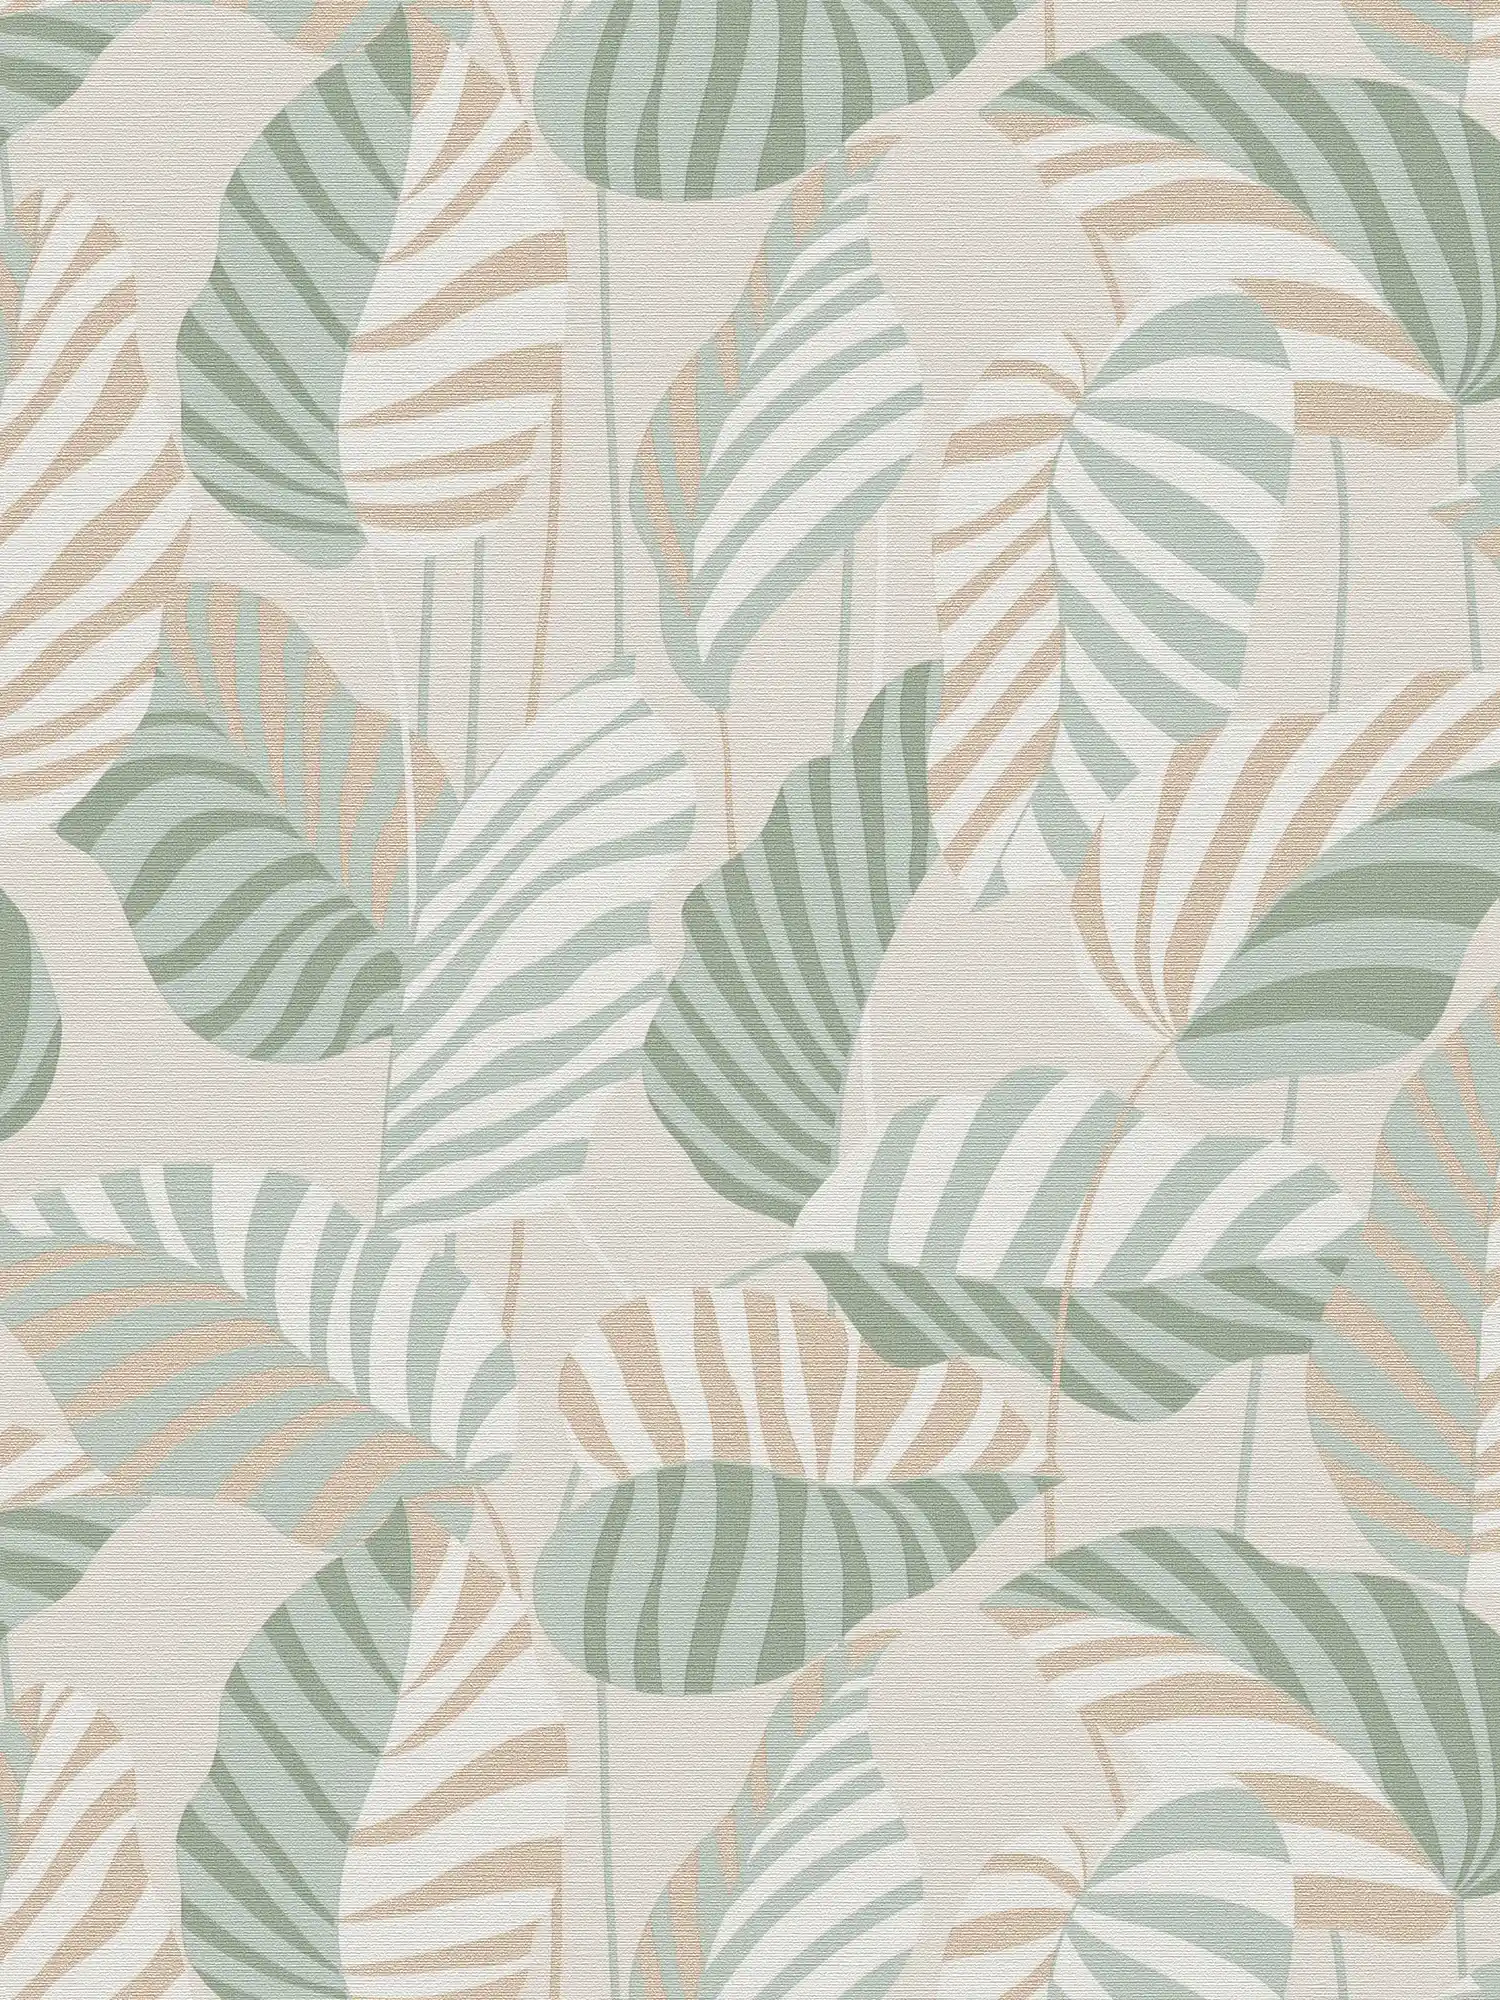 Papier peint intissé style naturel avec feuilles de palmier légèrement brillantes - crème, vert, or
